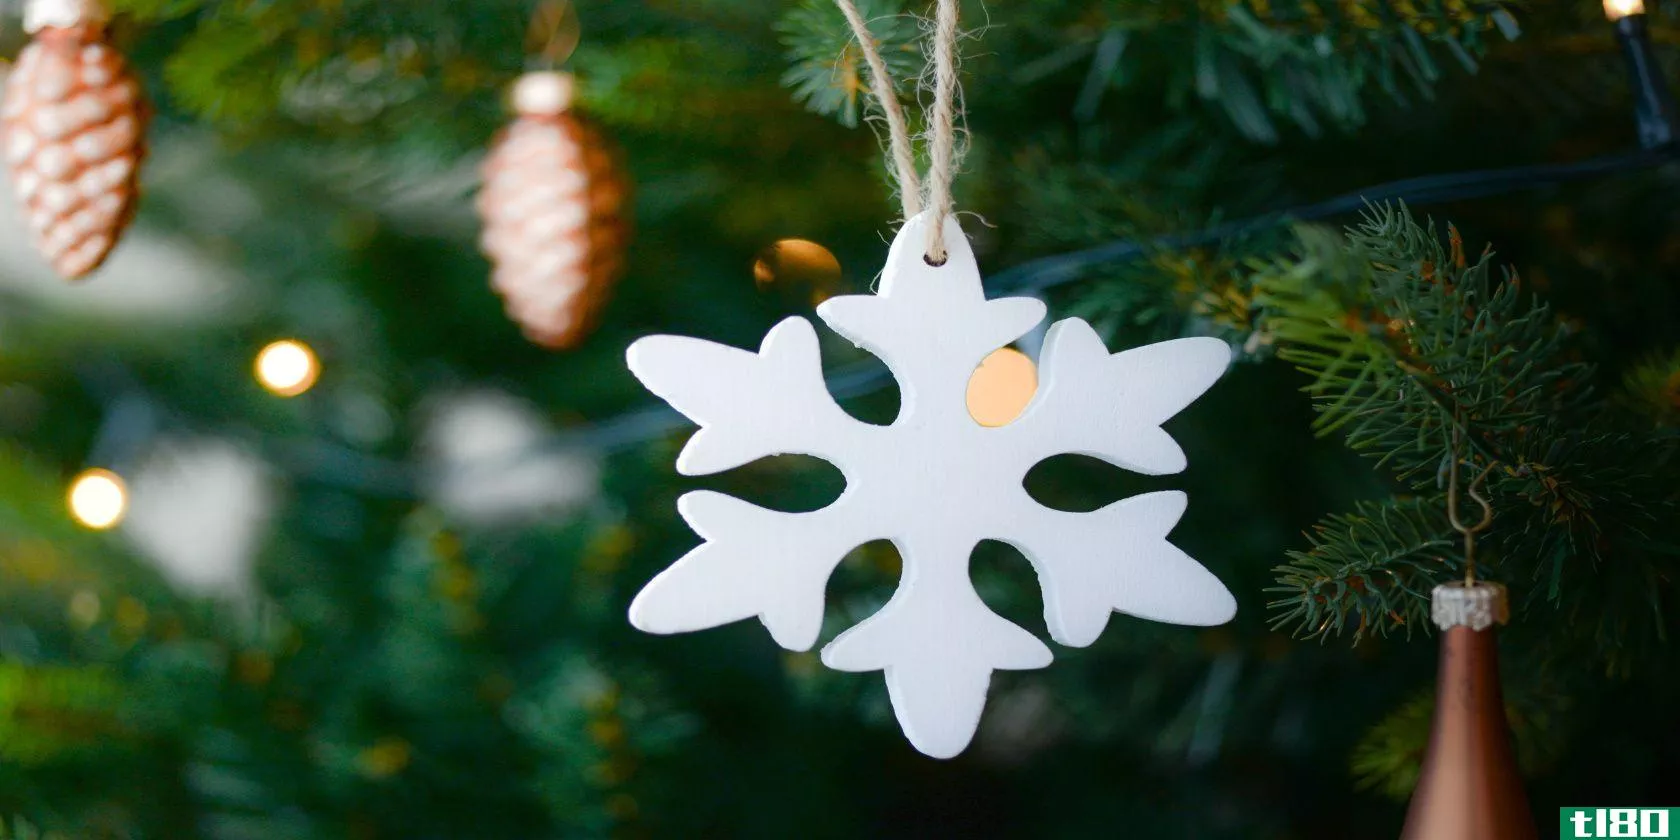 Snowflake on a Christmas tree